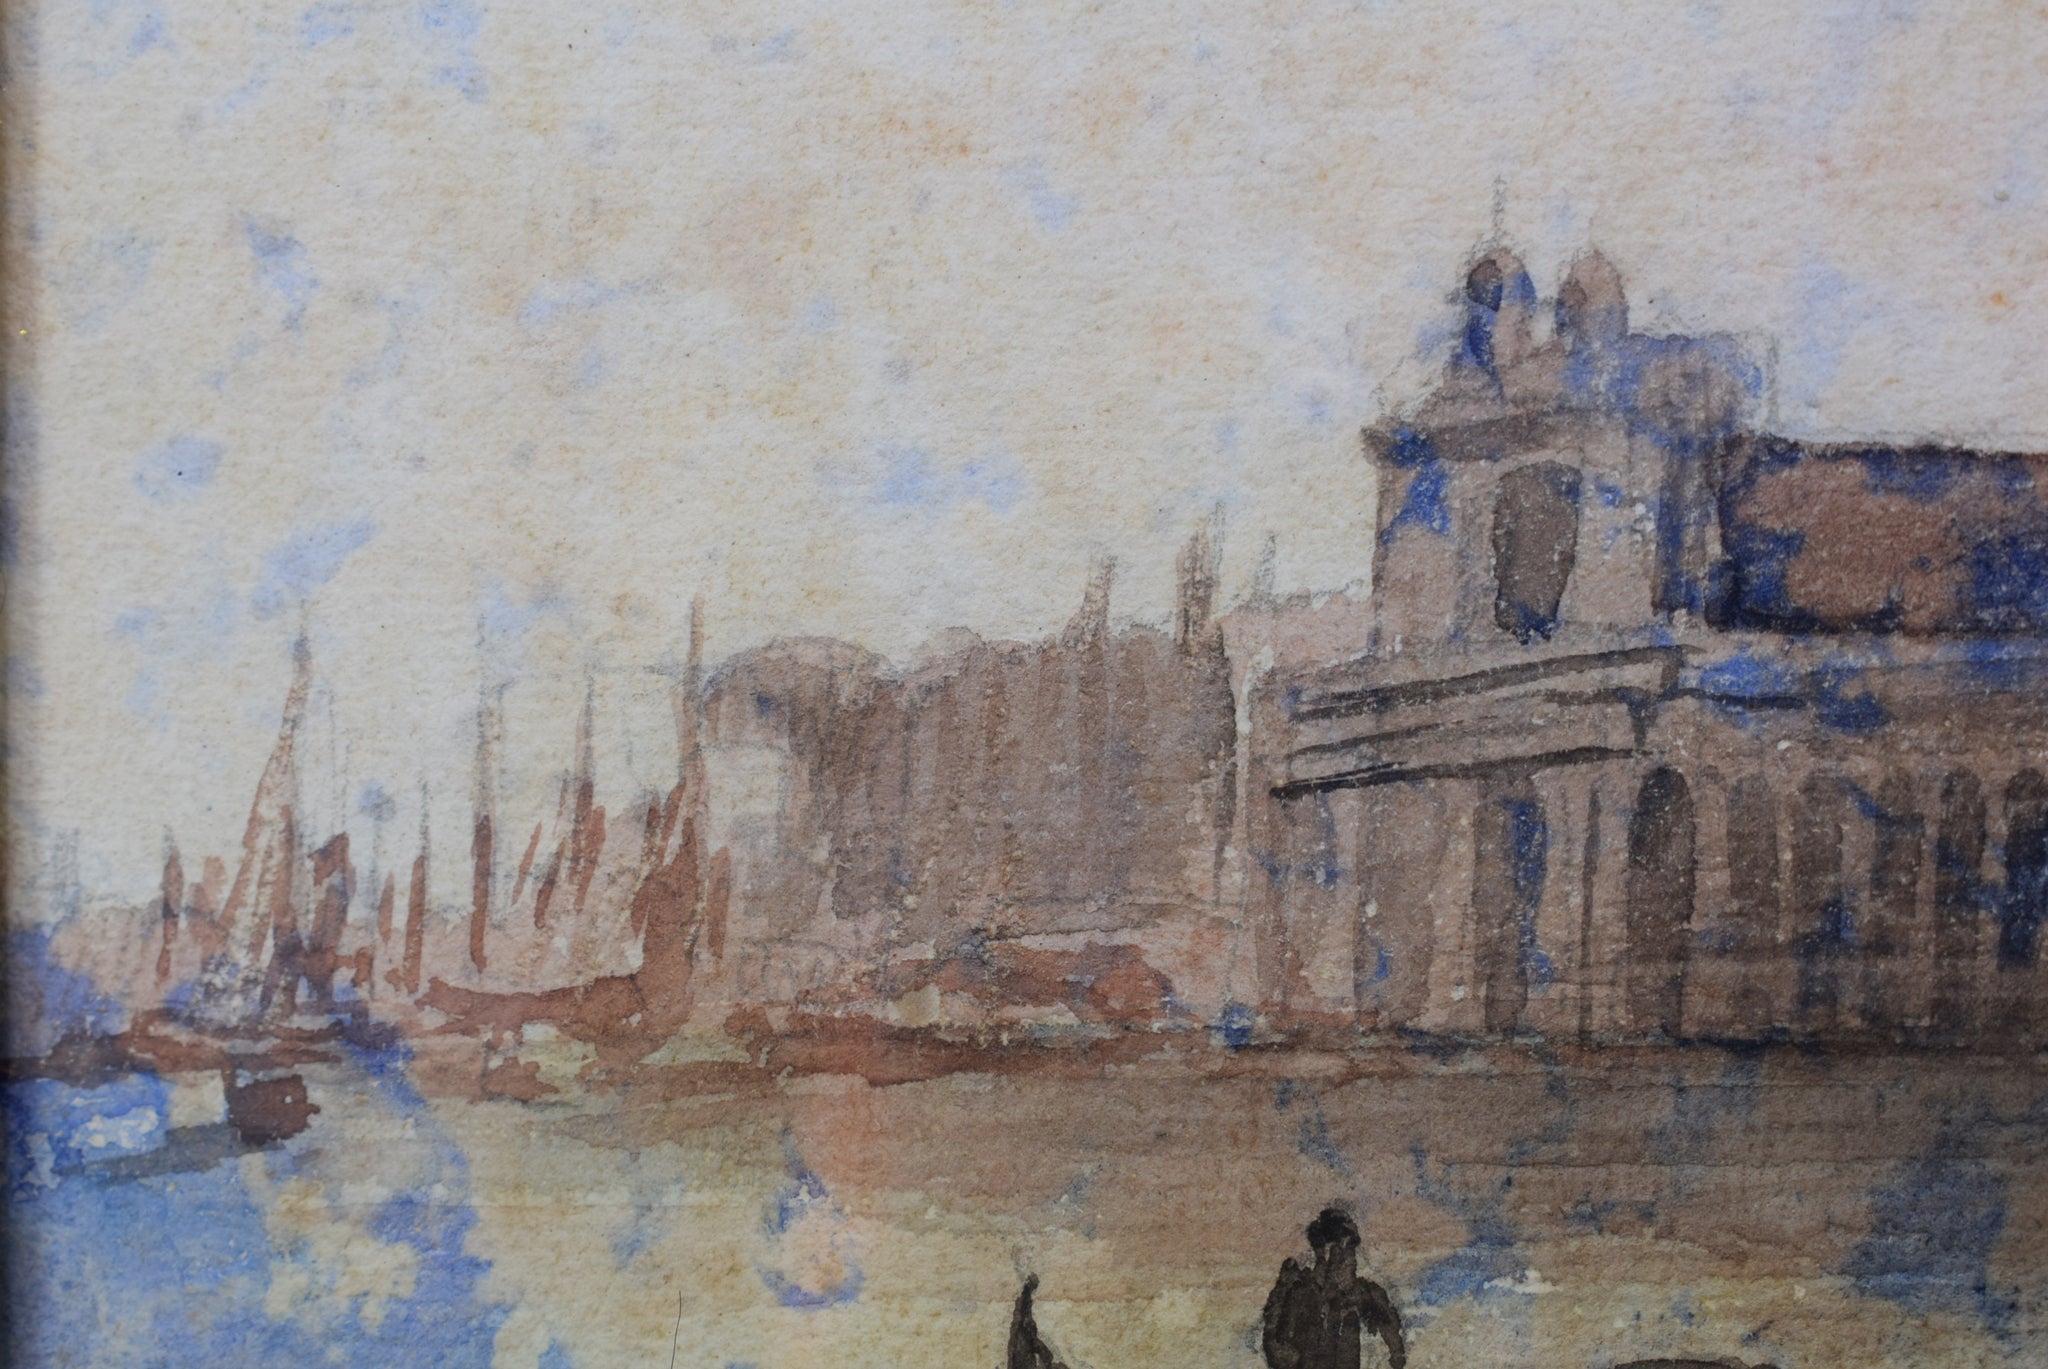 Venice Watercolour - Charmantiques